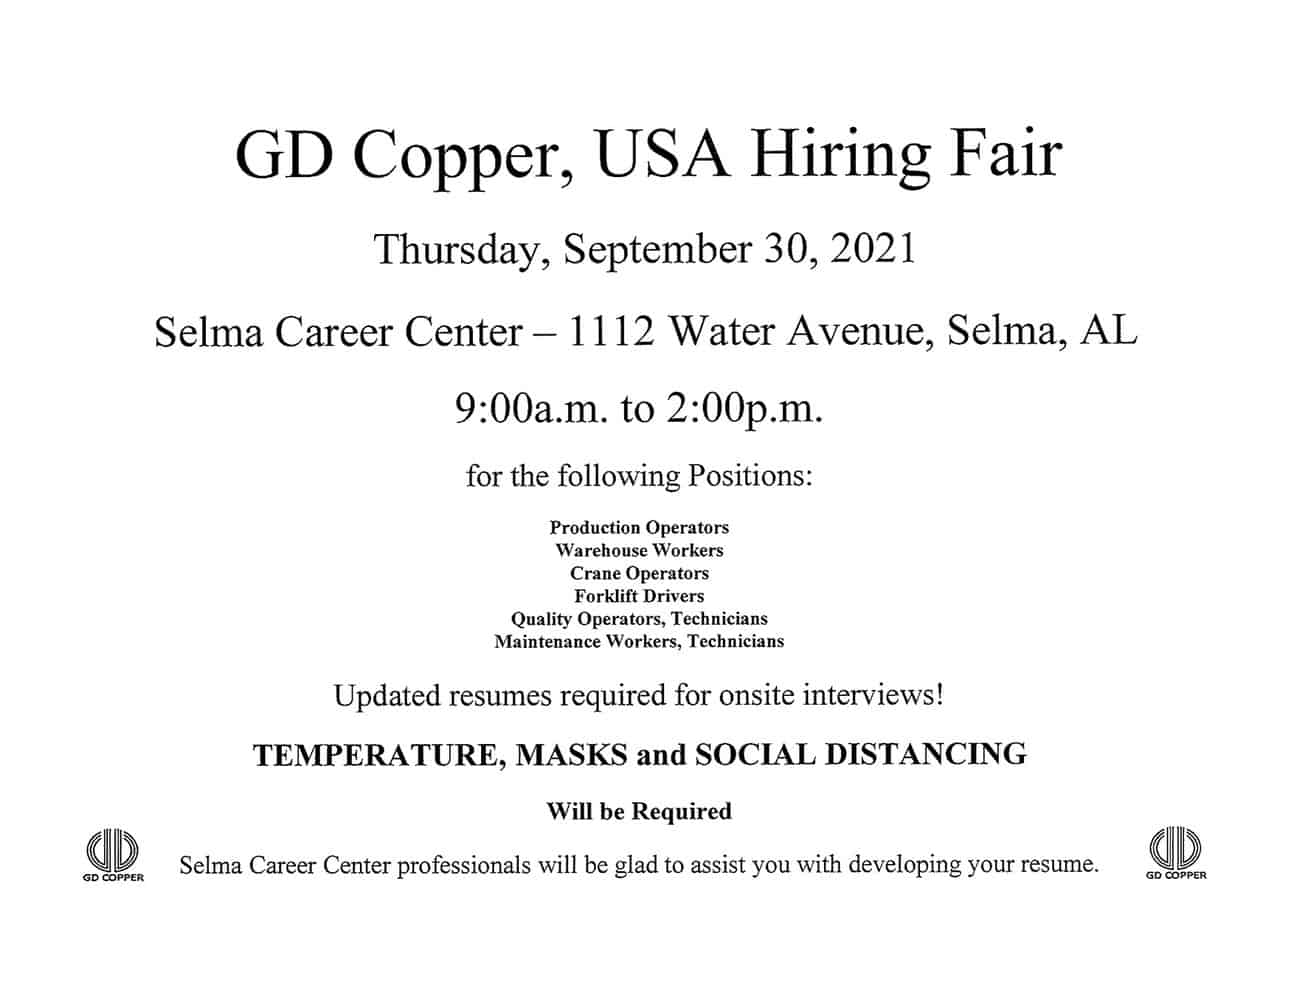 GD_Copper_USA_Hiring_Fair.jpg